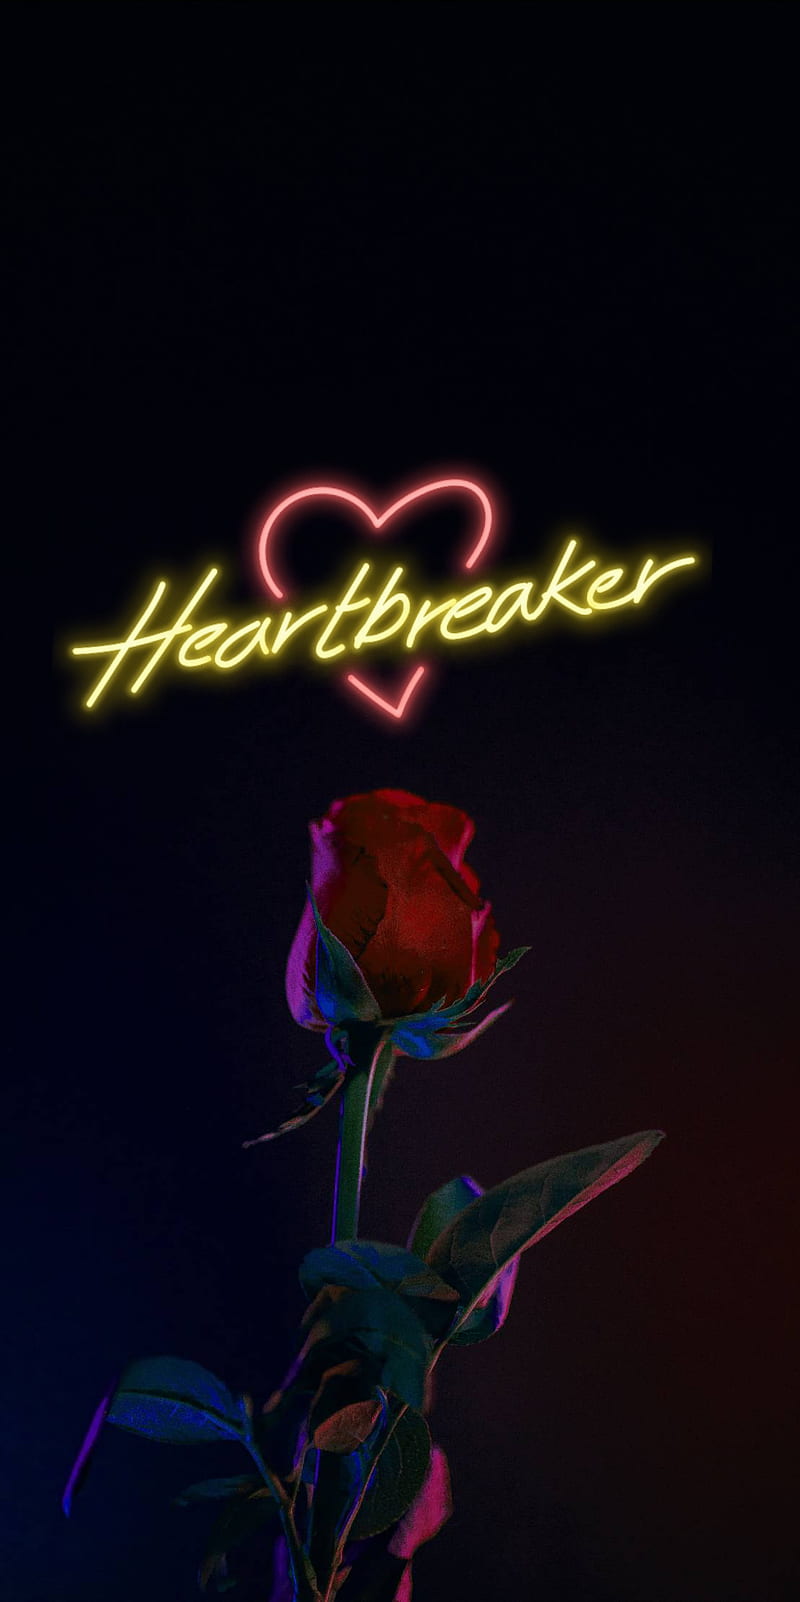 Heartbreaker, heart, breaker, rose, relationships, love, you, HD phone wallpaper